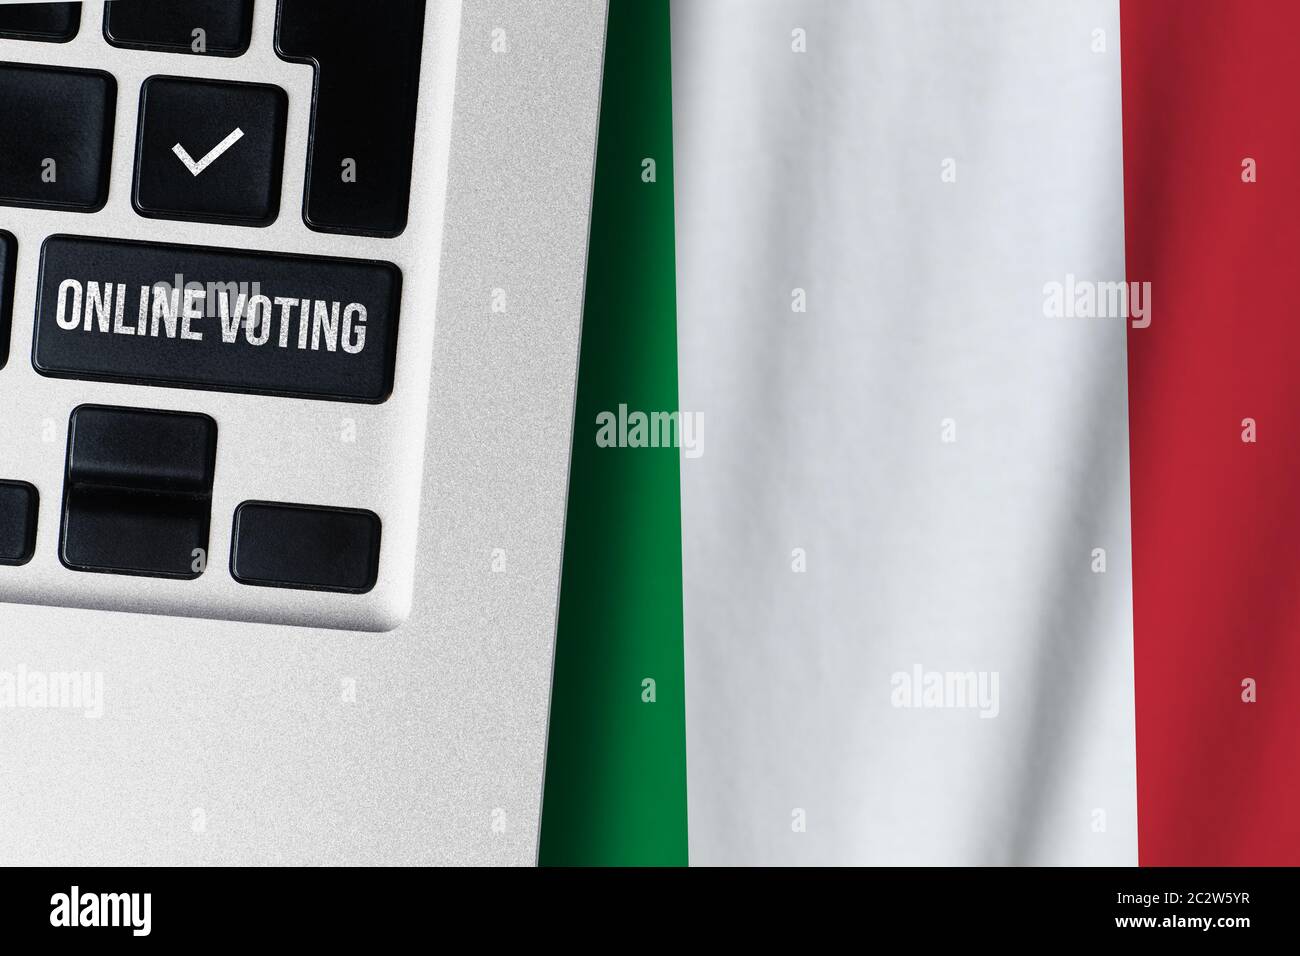 Concept de vote en ligne en République italienne. Clavier près de pays Italie drapeau Banque D'Images